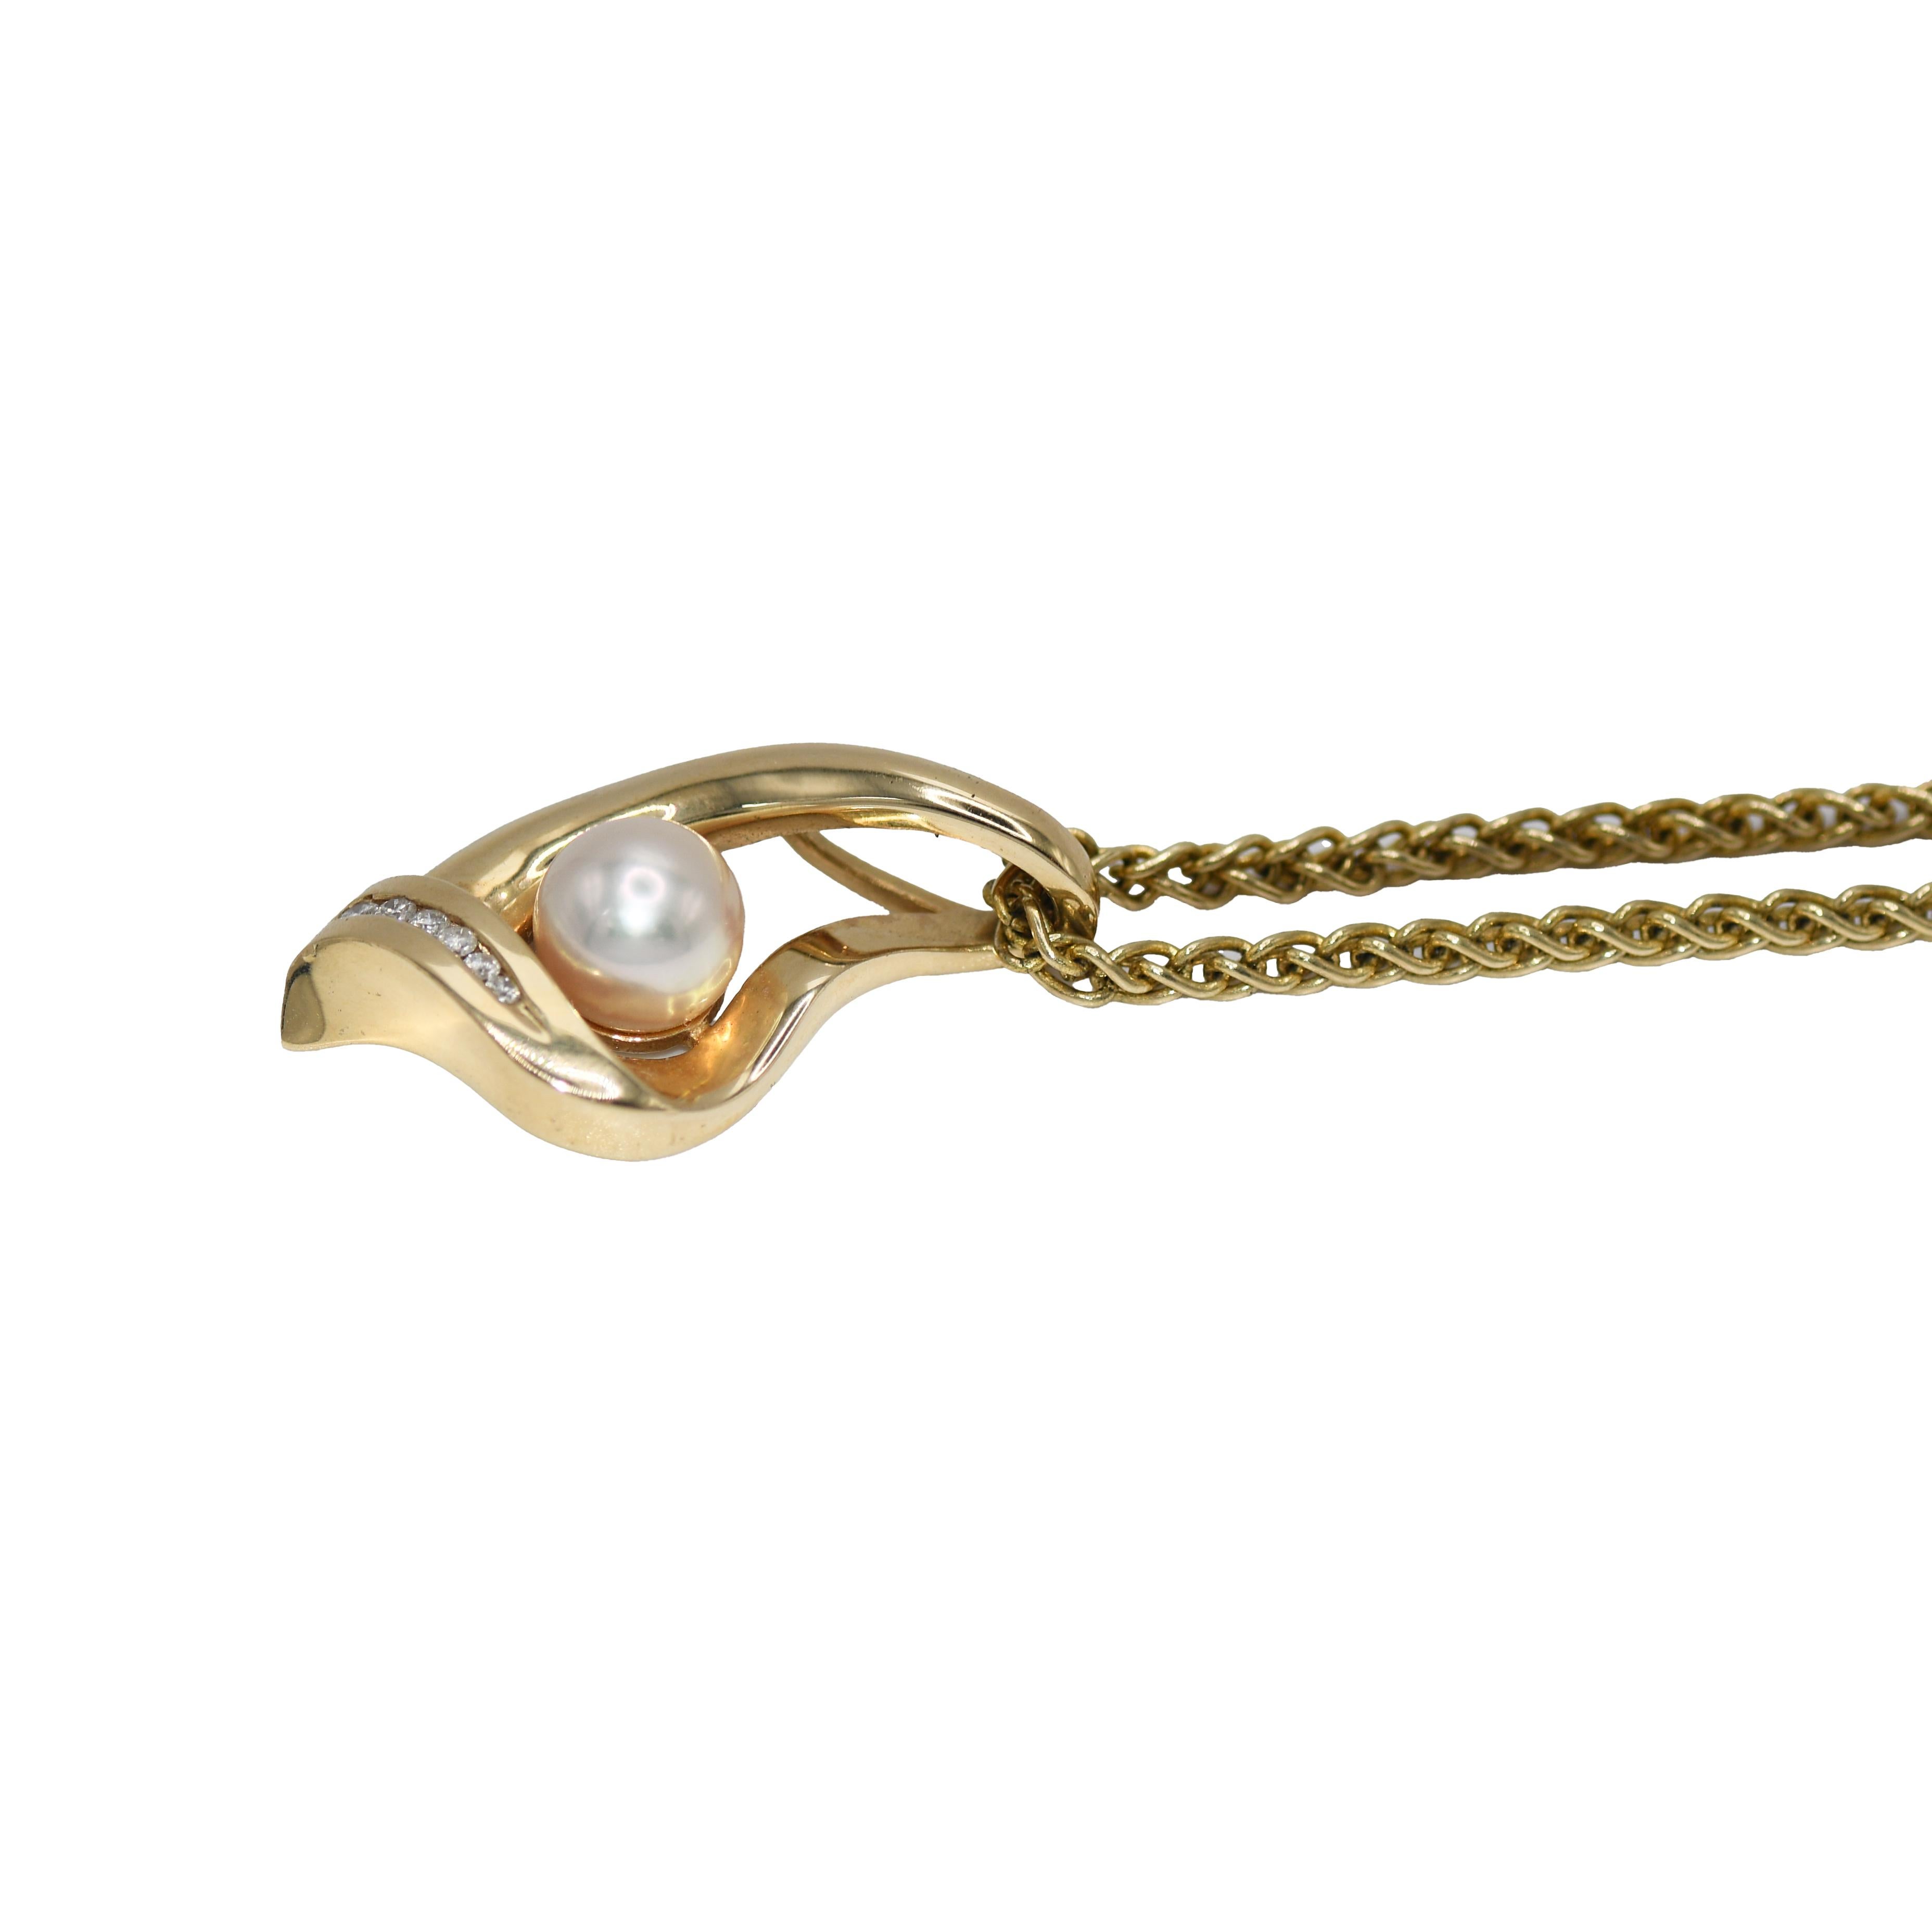 14K Gelbgold Diamant und Perlenkette 16.5g

Werten Sie Ihre Schmucksammlung mit unserer 14K Yellow Gold Diamond & Pearl Necklace auf. Dieses Stück strahlt Raffinesse und zeitlosen Charme aus. Das Herzstück ist eine schimmernde Perle mit einem zarten